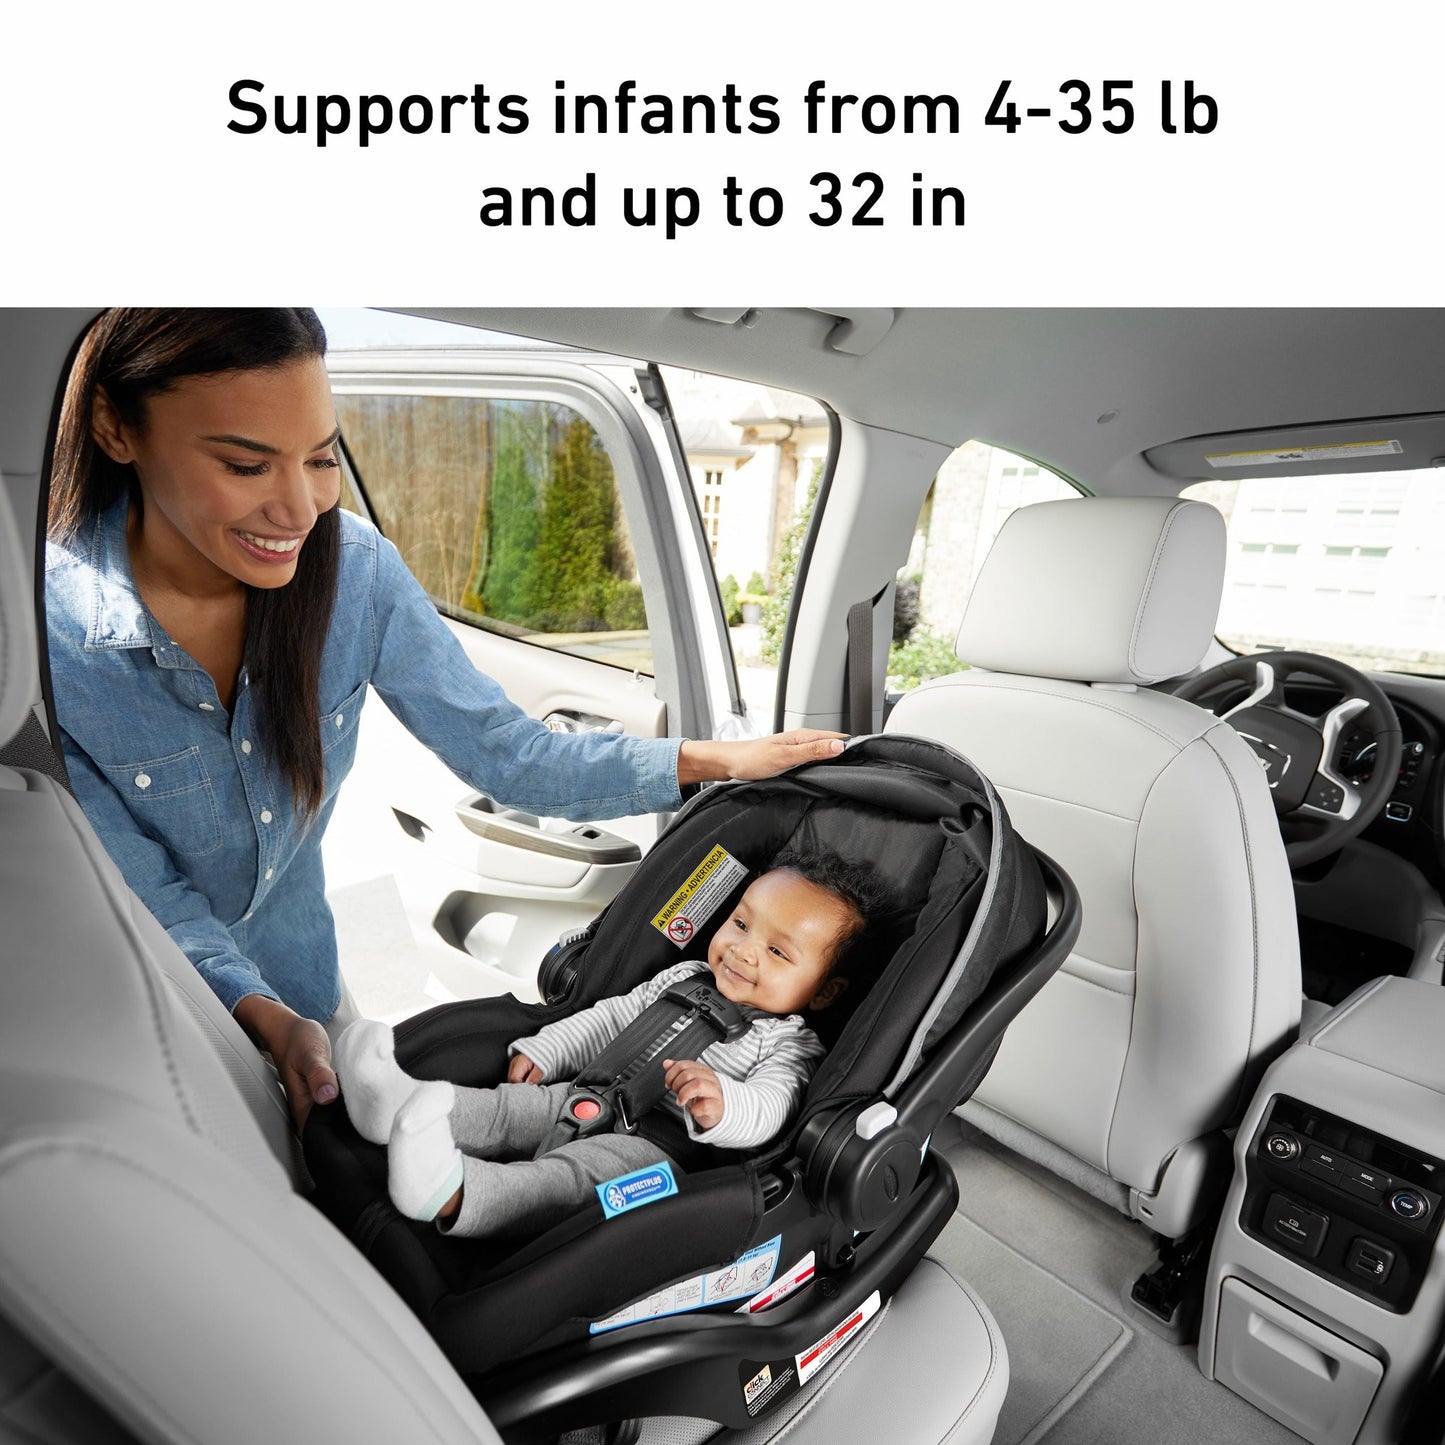 Graco SnugRide 35 Lite Infant Car Seat